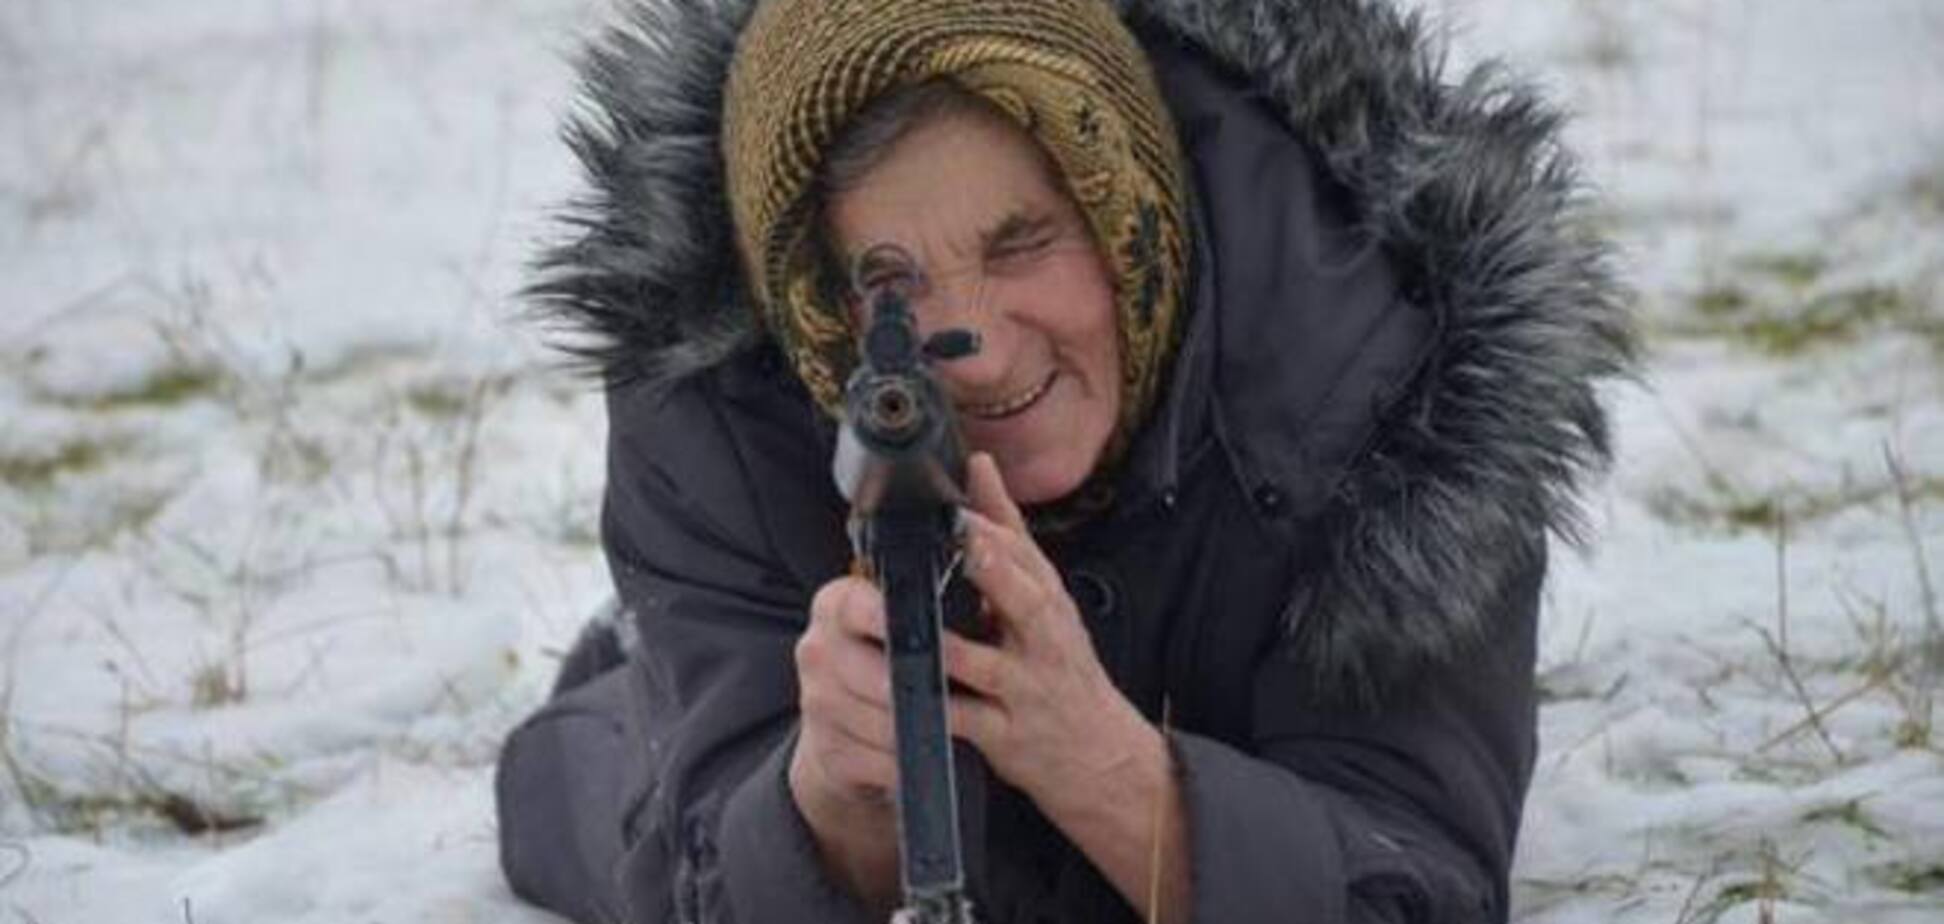 В сети появились фото украинской пенсионерки с автоматом на военных учениях